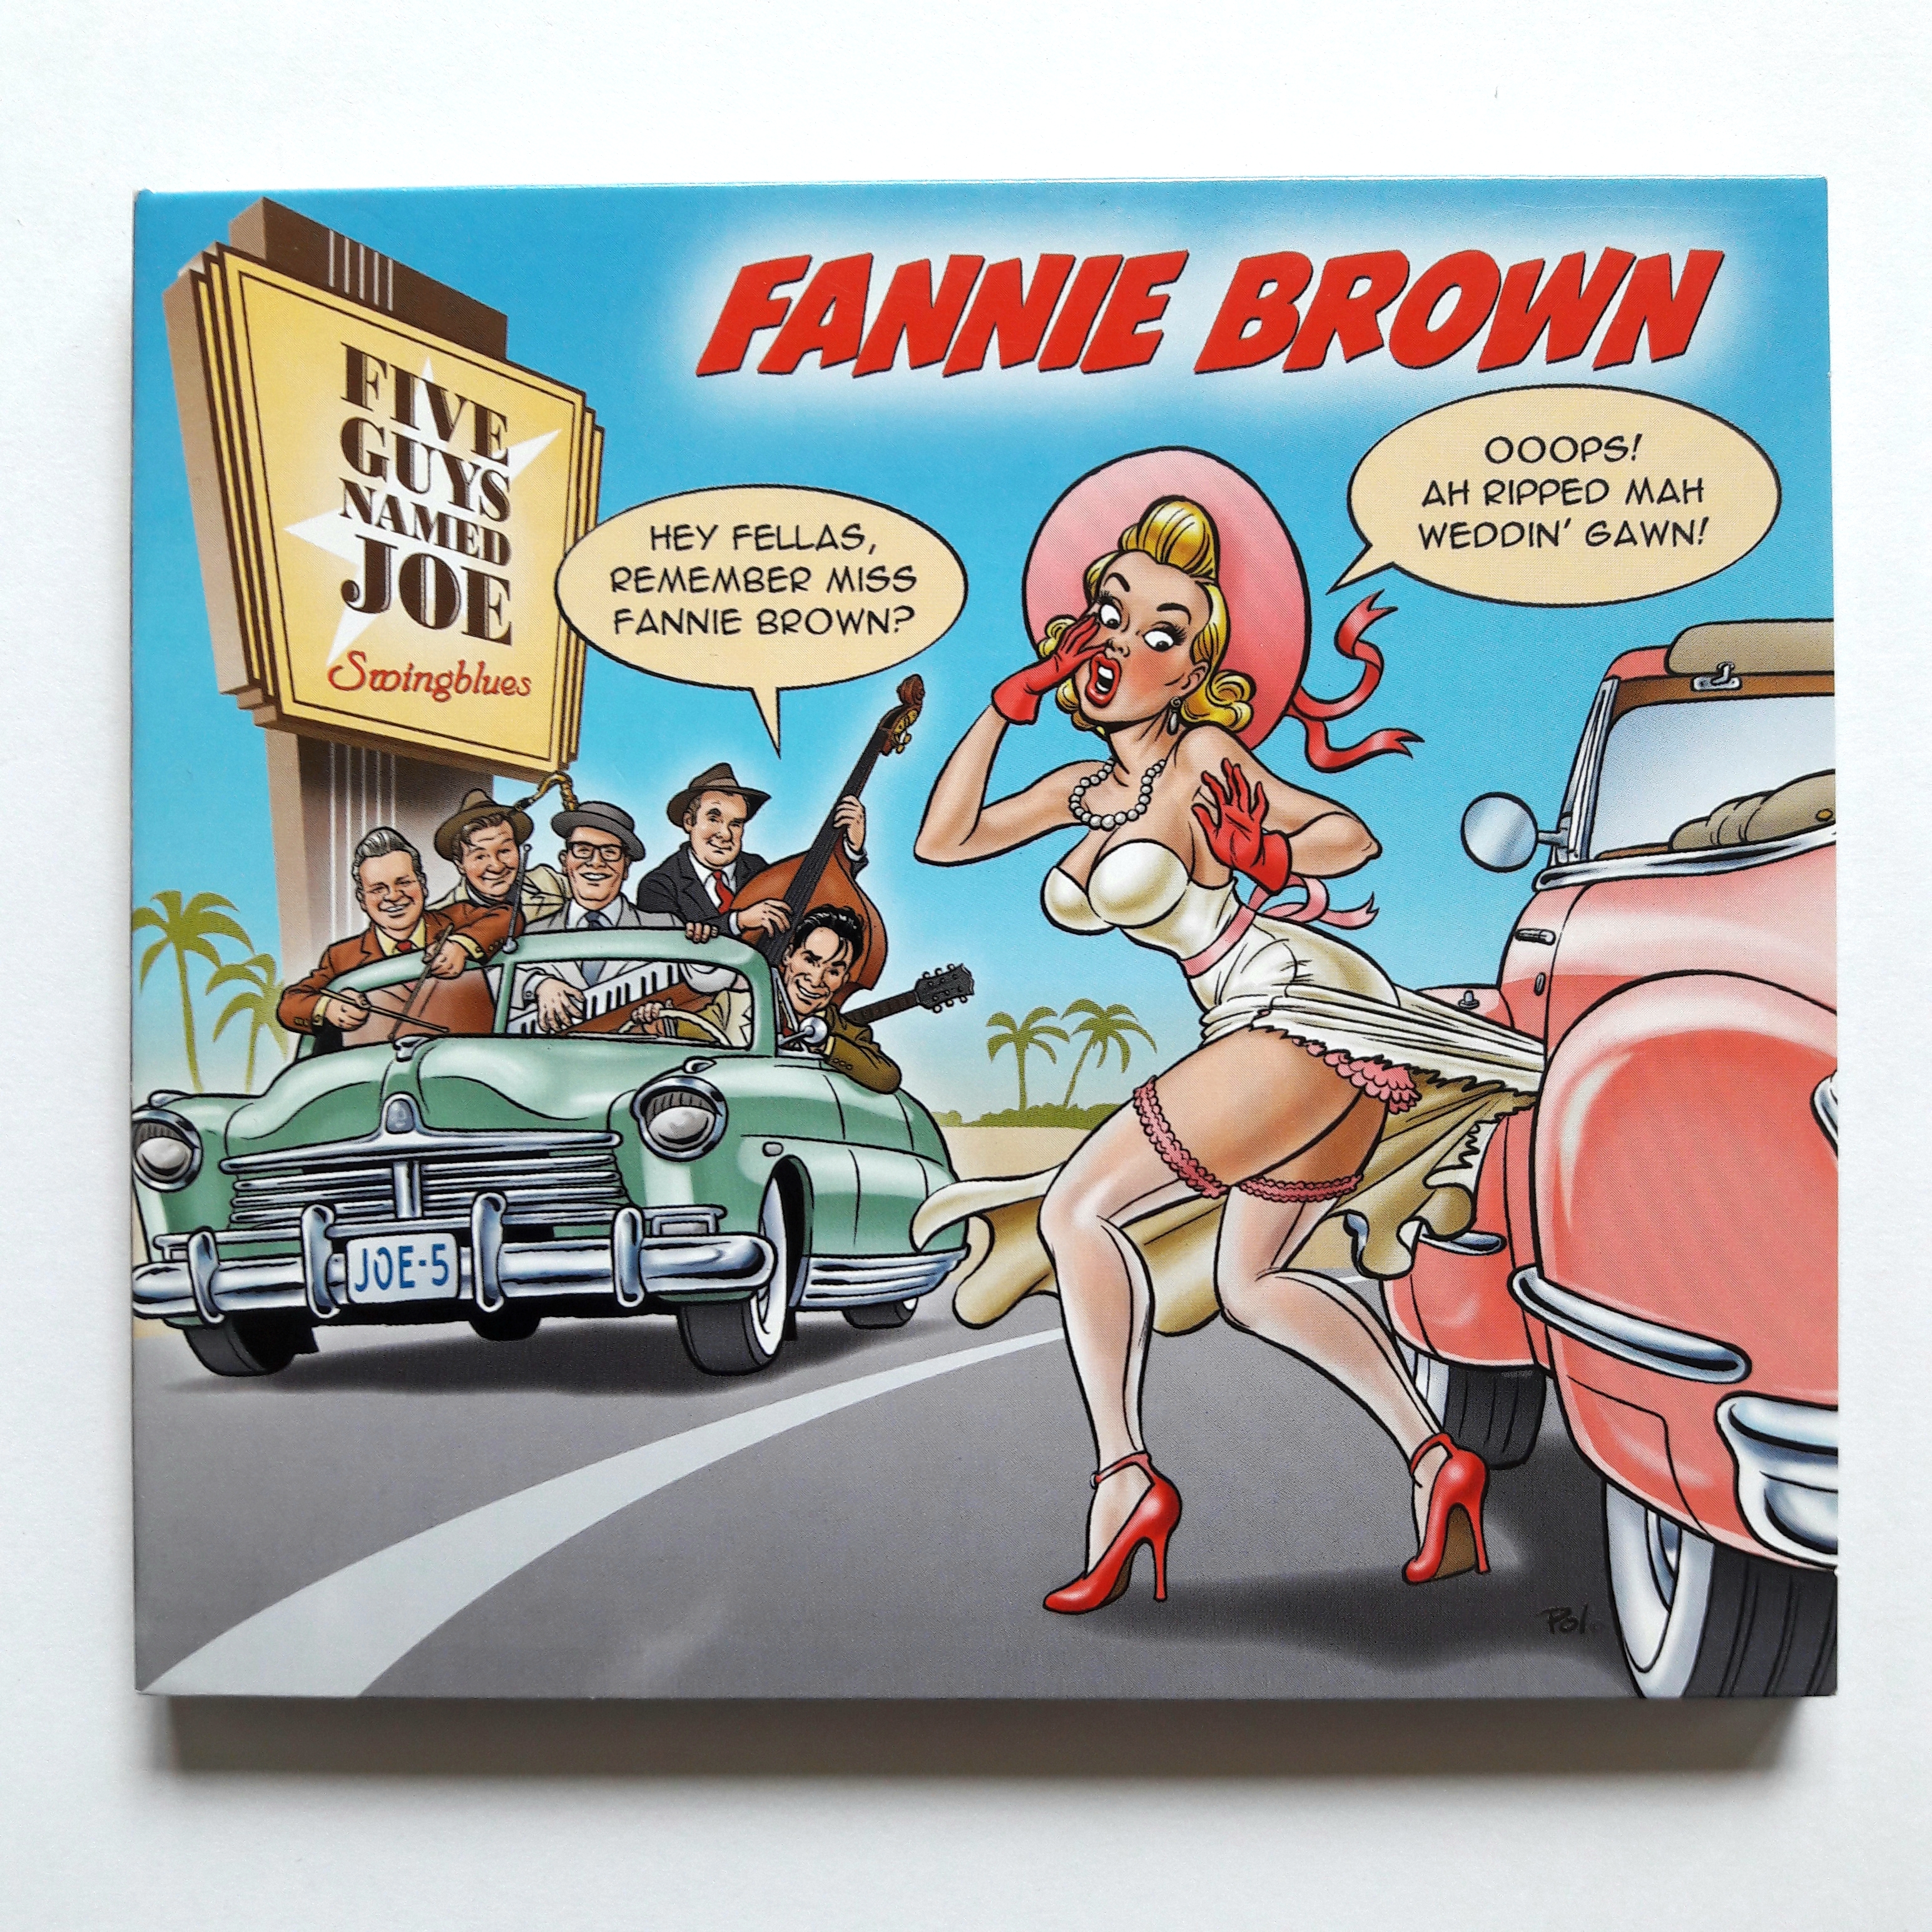 Five Guys Named Joe - Fannie Brown